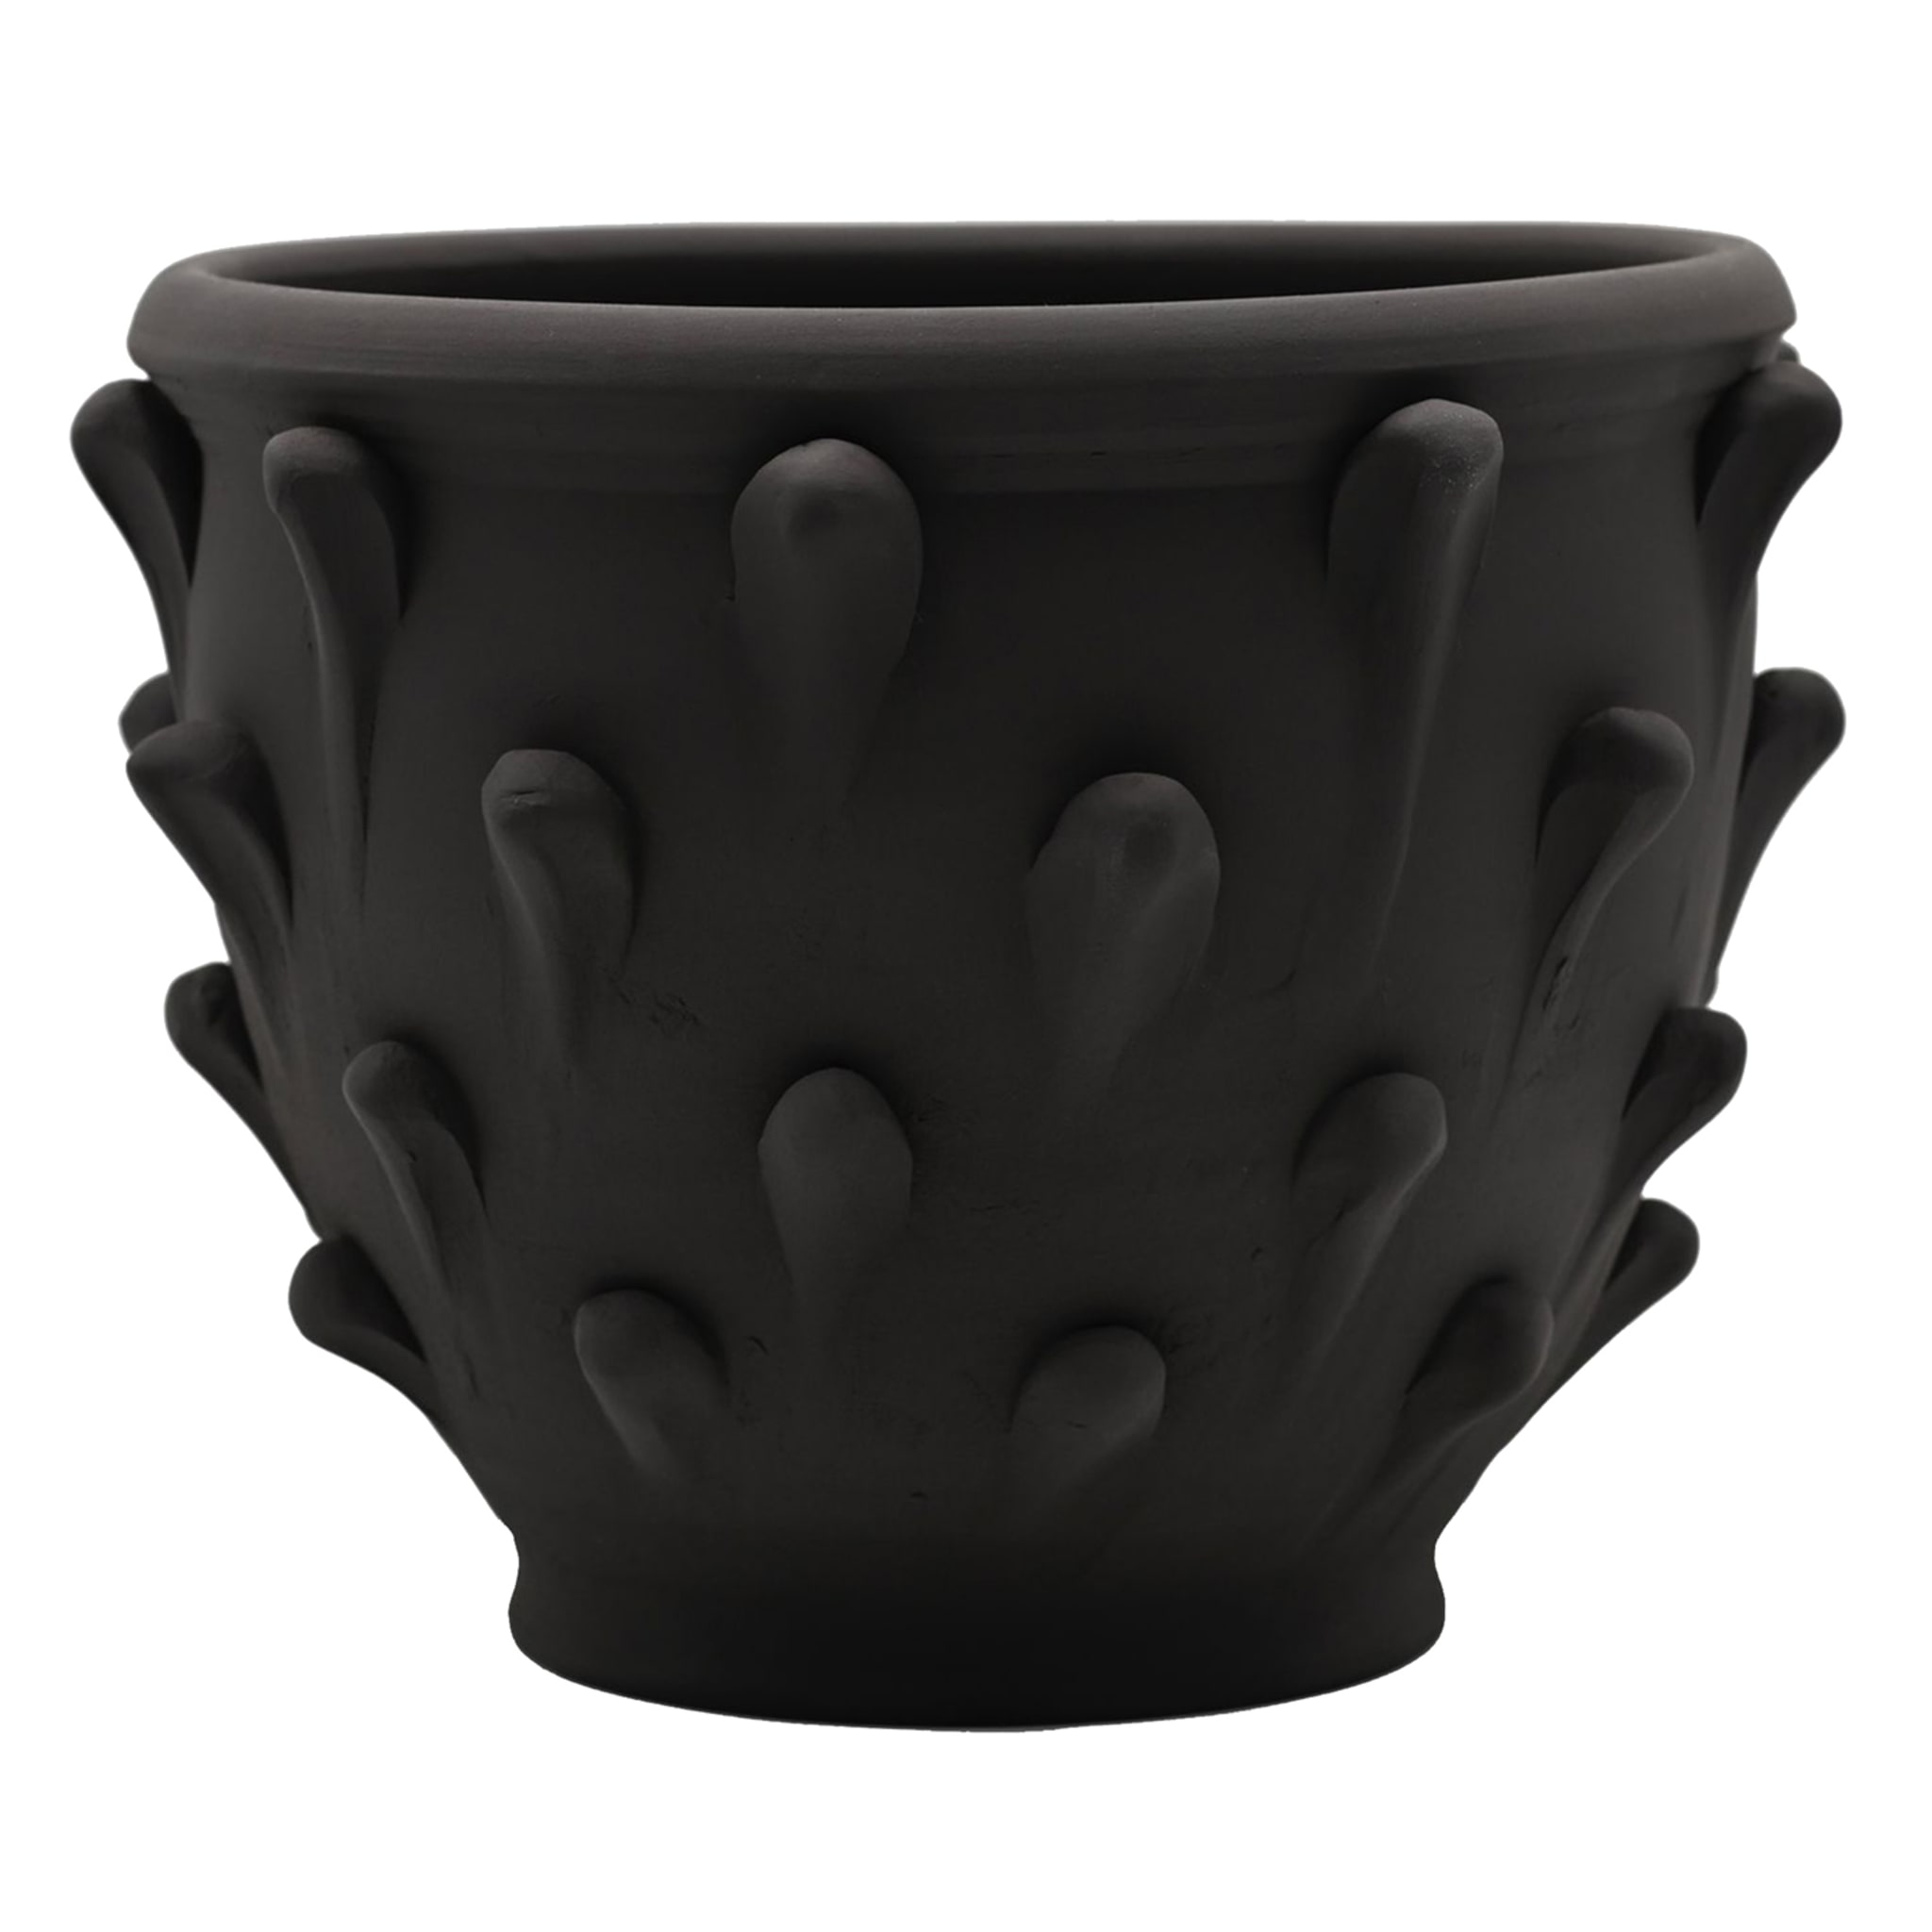 Heirloom Quality Handmade Italian Vase